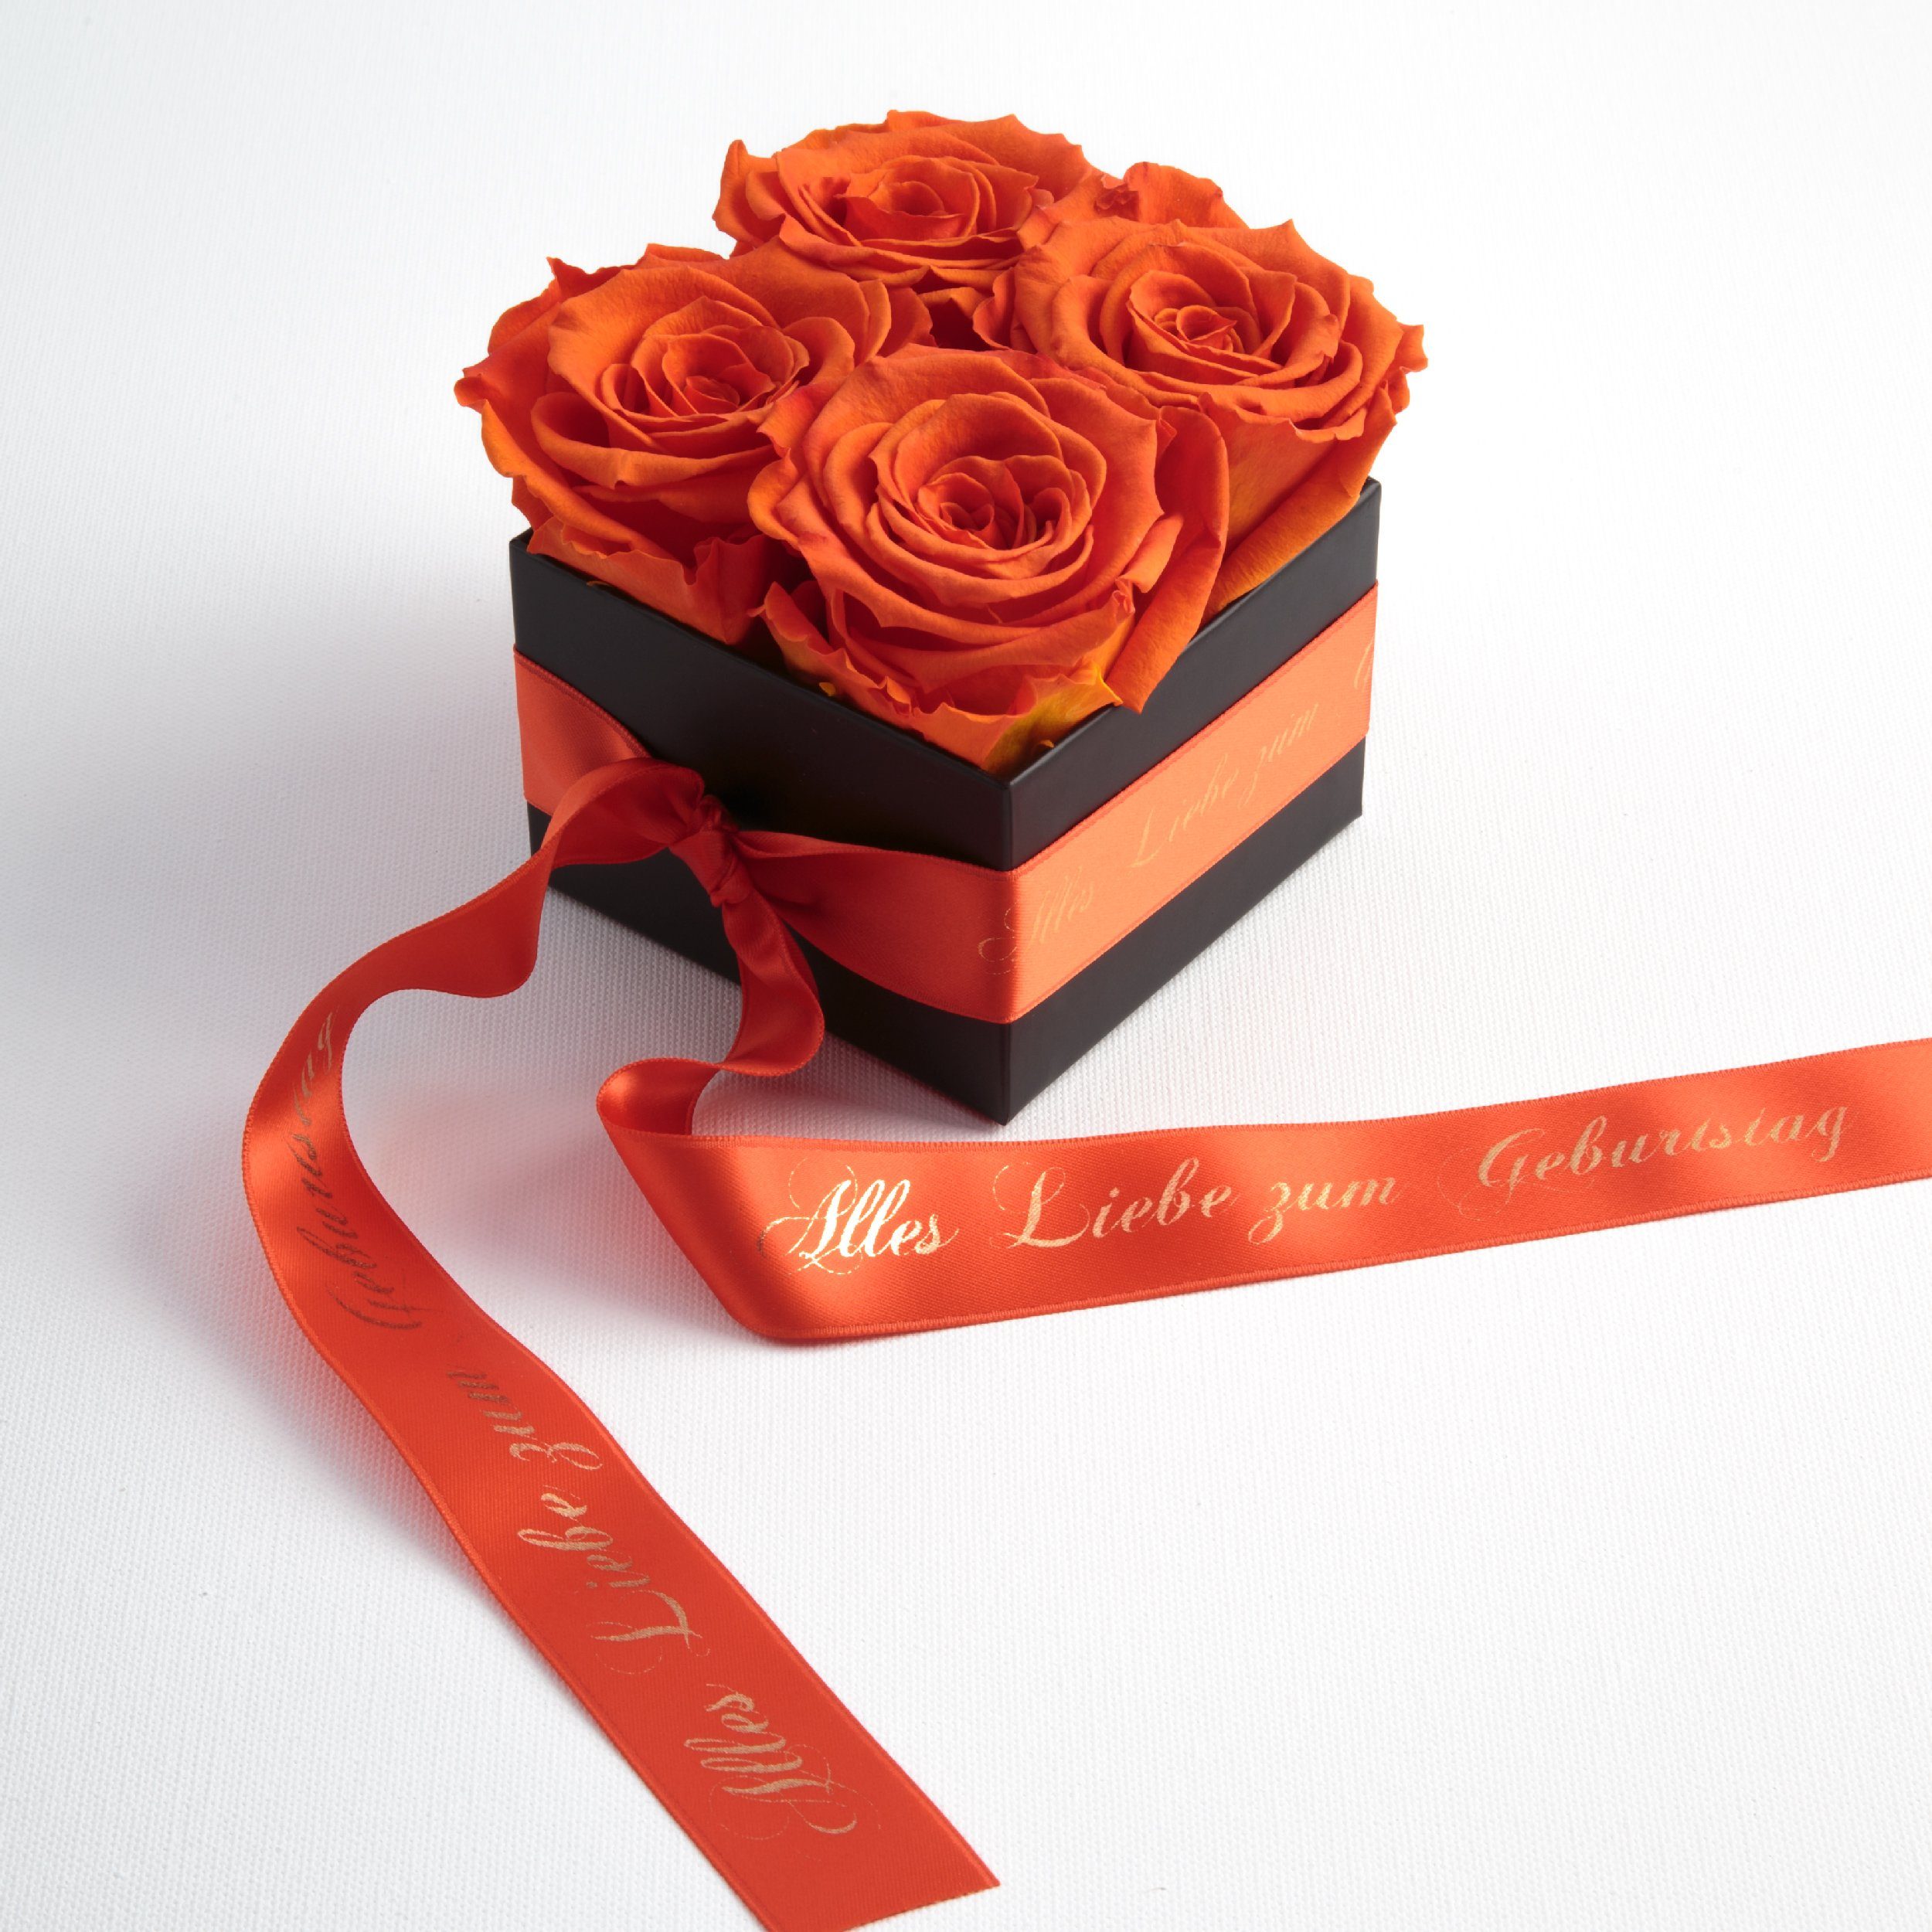 Geschenk Geburtstag Alles Orange Liebe zum konservierte für echte Heidelberg Rosen St), (1 Frauen SCHULZ ROSEMARIE Echte Rosen Rosenbox Dekoobjekt